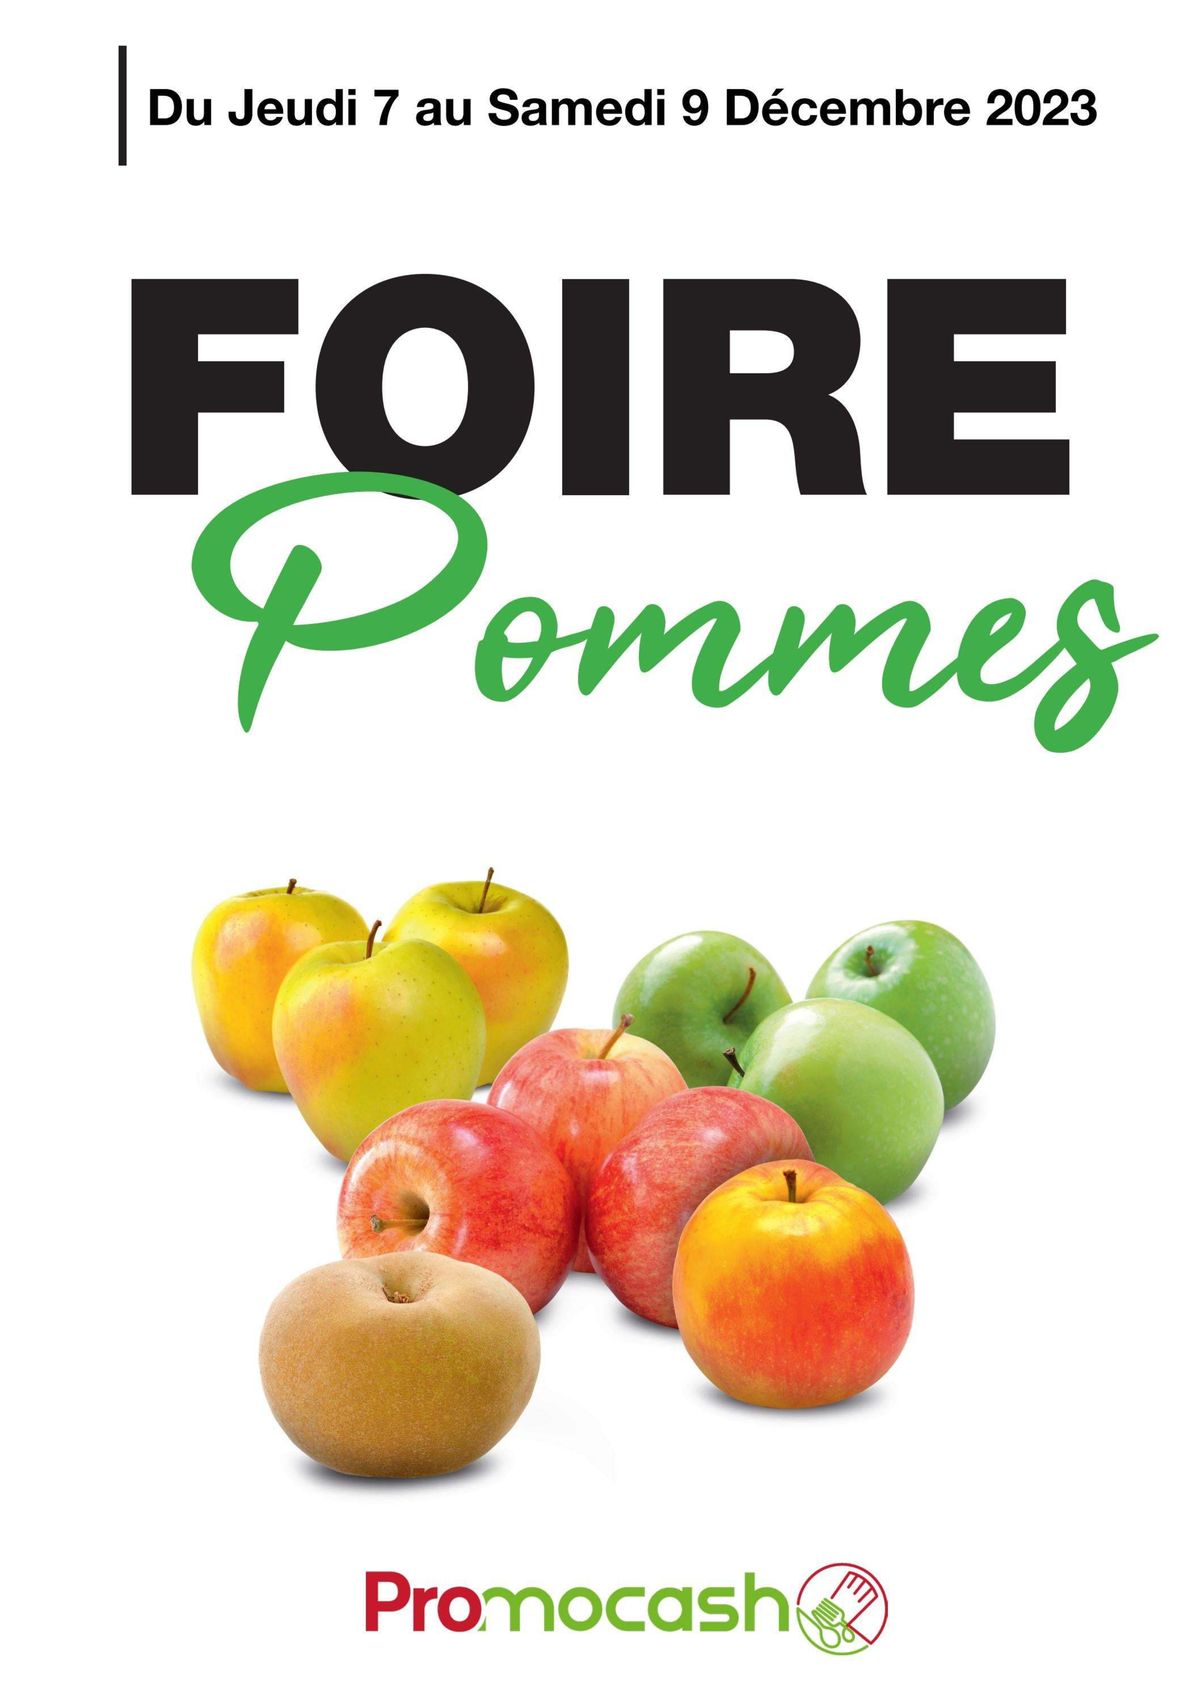 Catalogue Foire pommes, page 00001